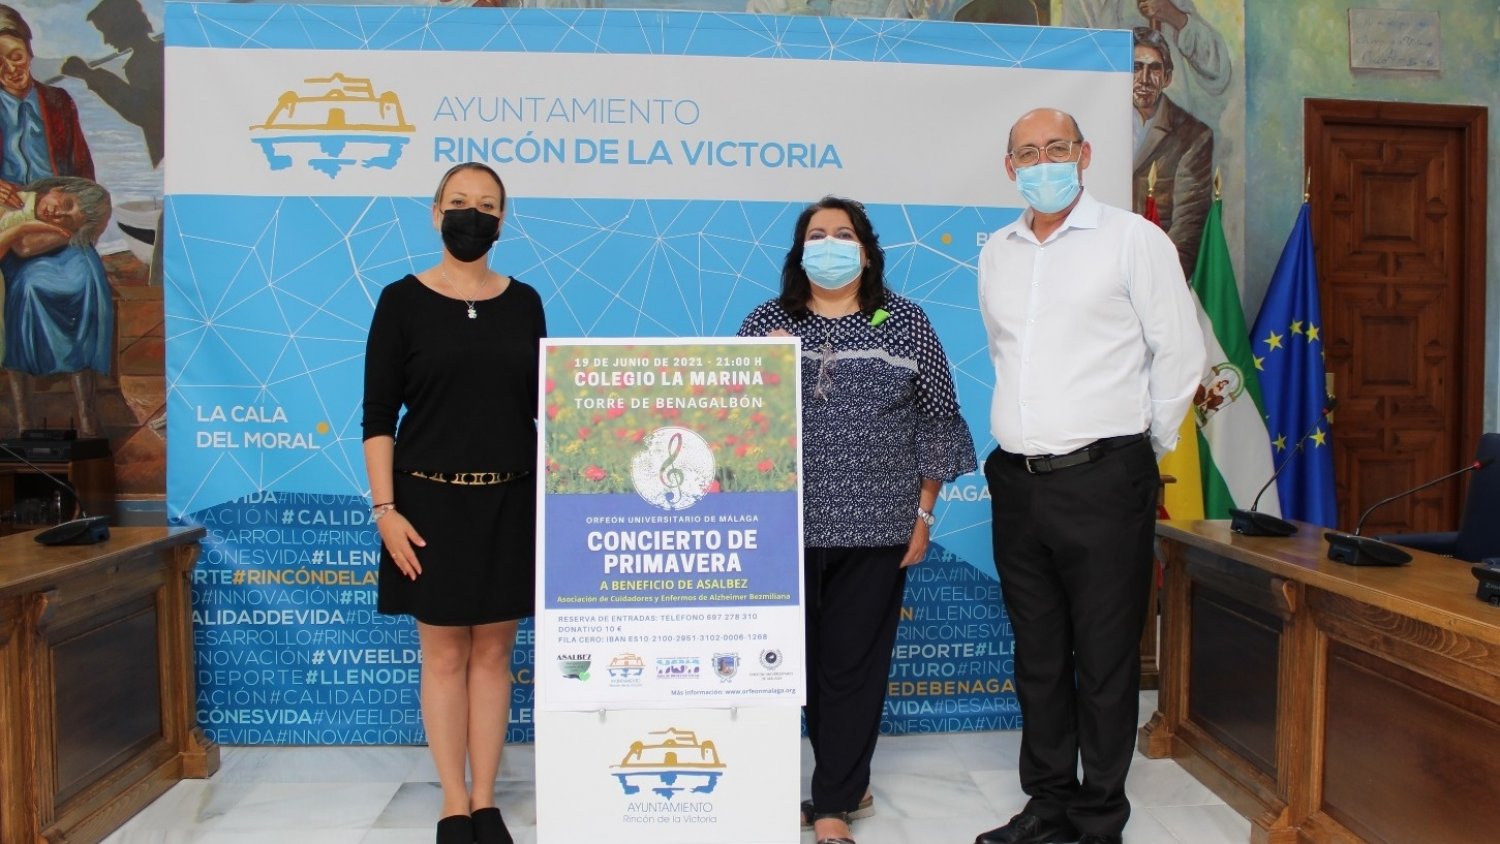 Bienestar Social de Rincón de la Victoria organiza un concierto en beneficio de ASALBEZ